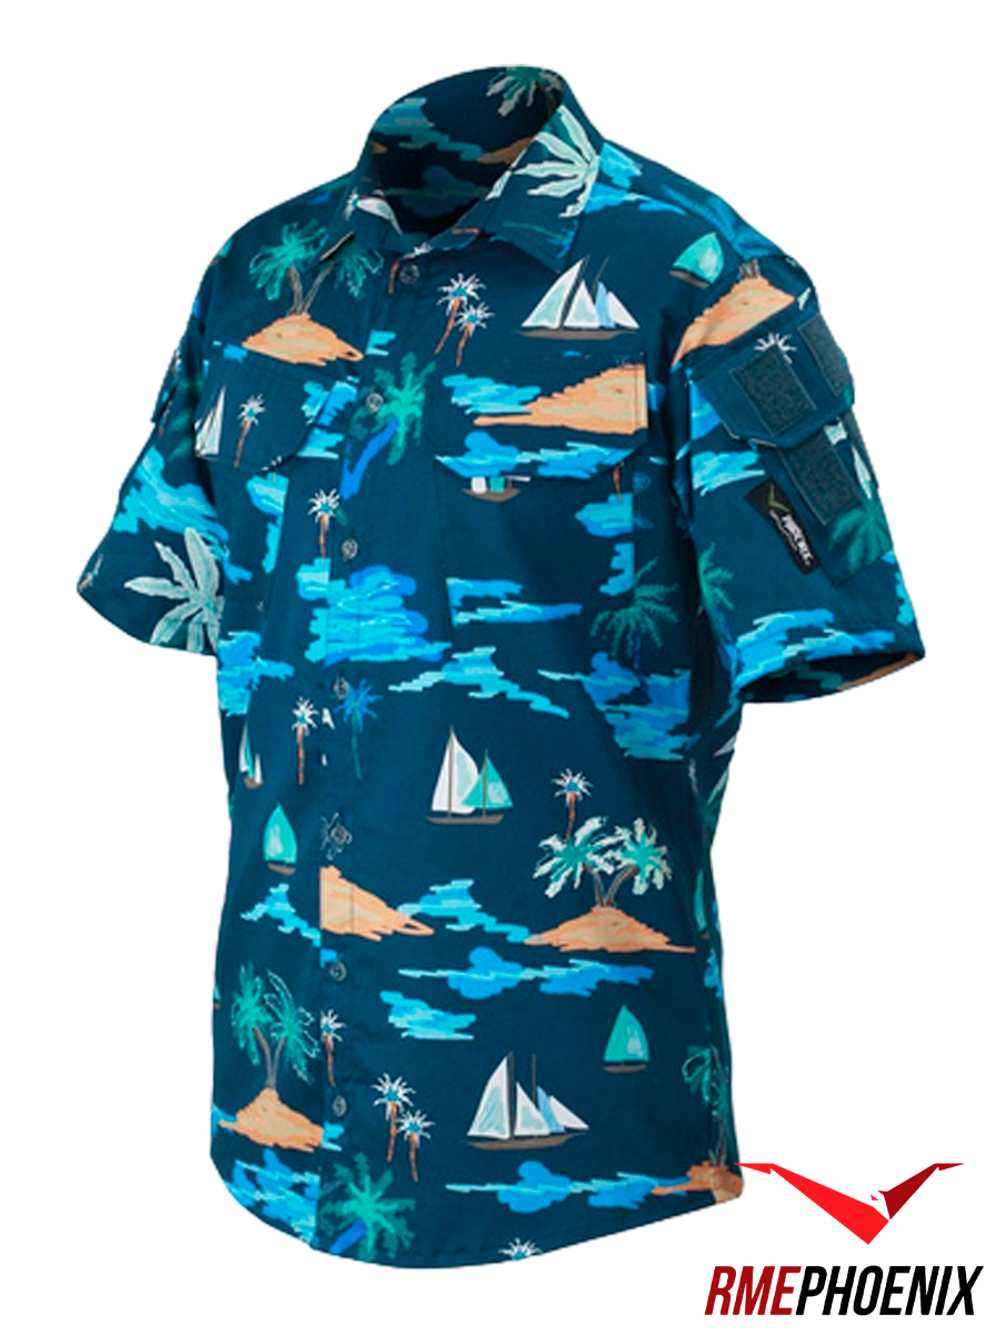 Рубашка Phoenix Hawaii. Isla